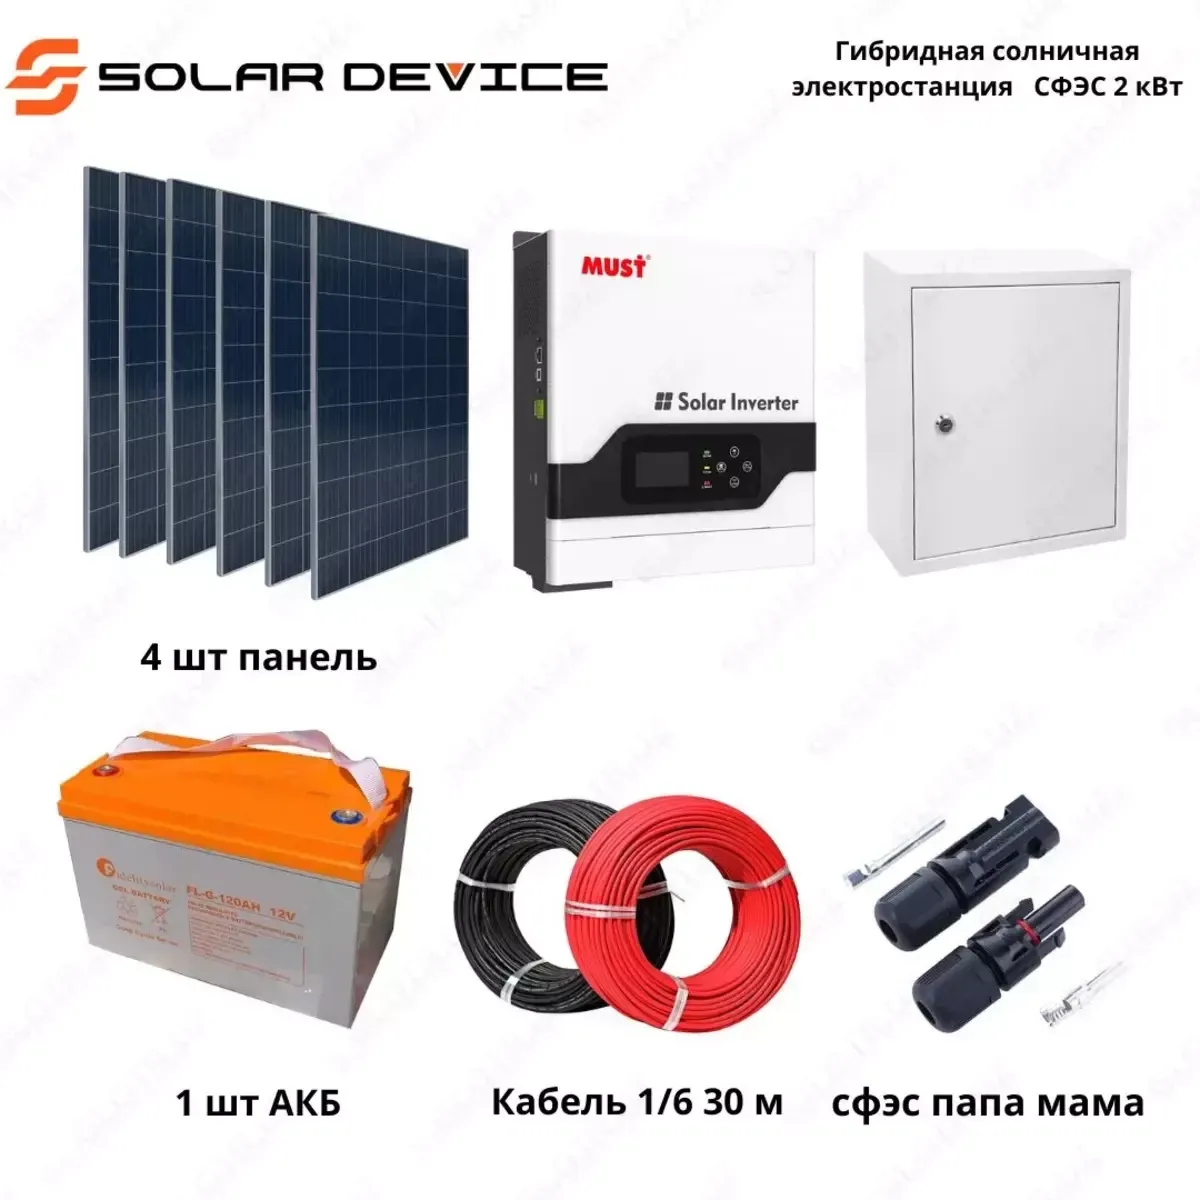 Гибридная солнечная электростанция "SOLAR" СФЭС (2 кВт)#1